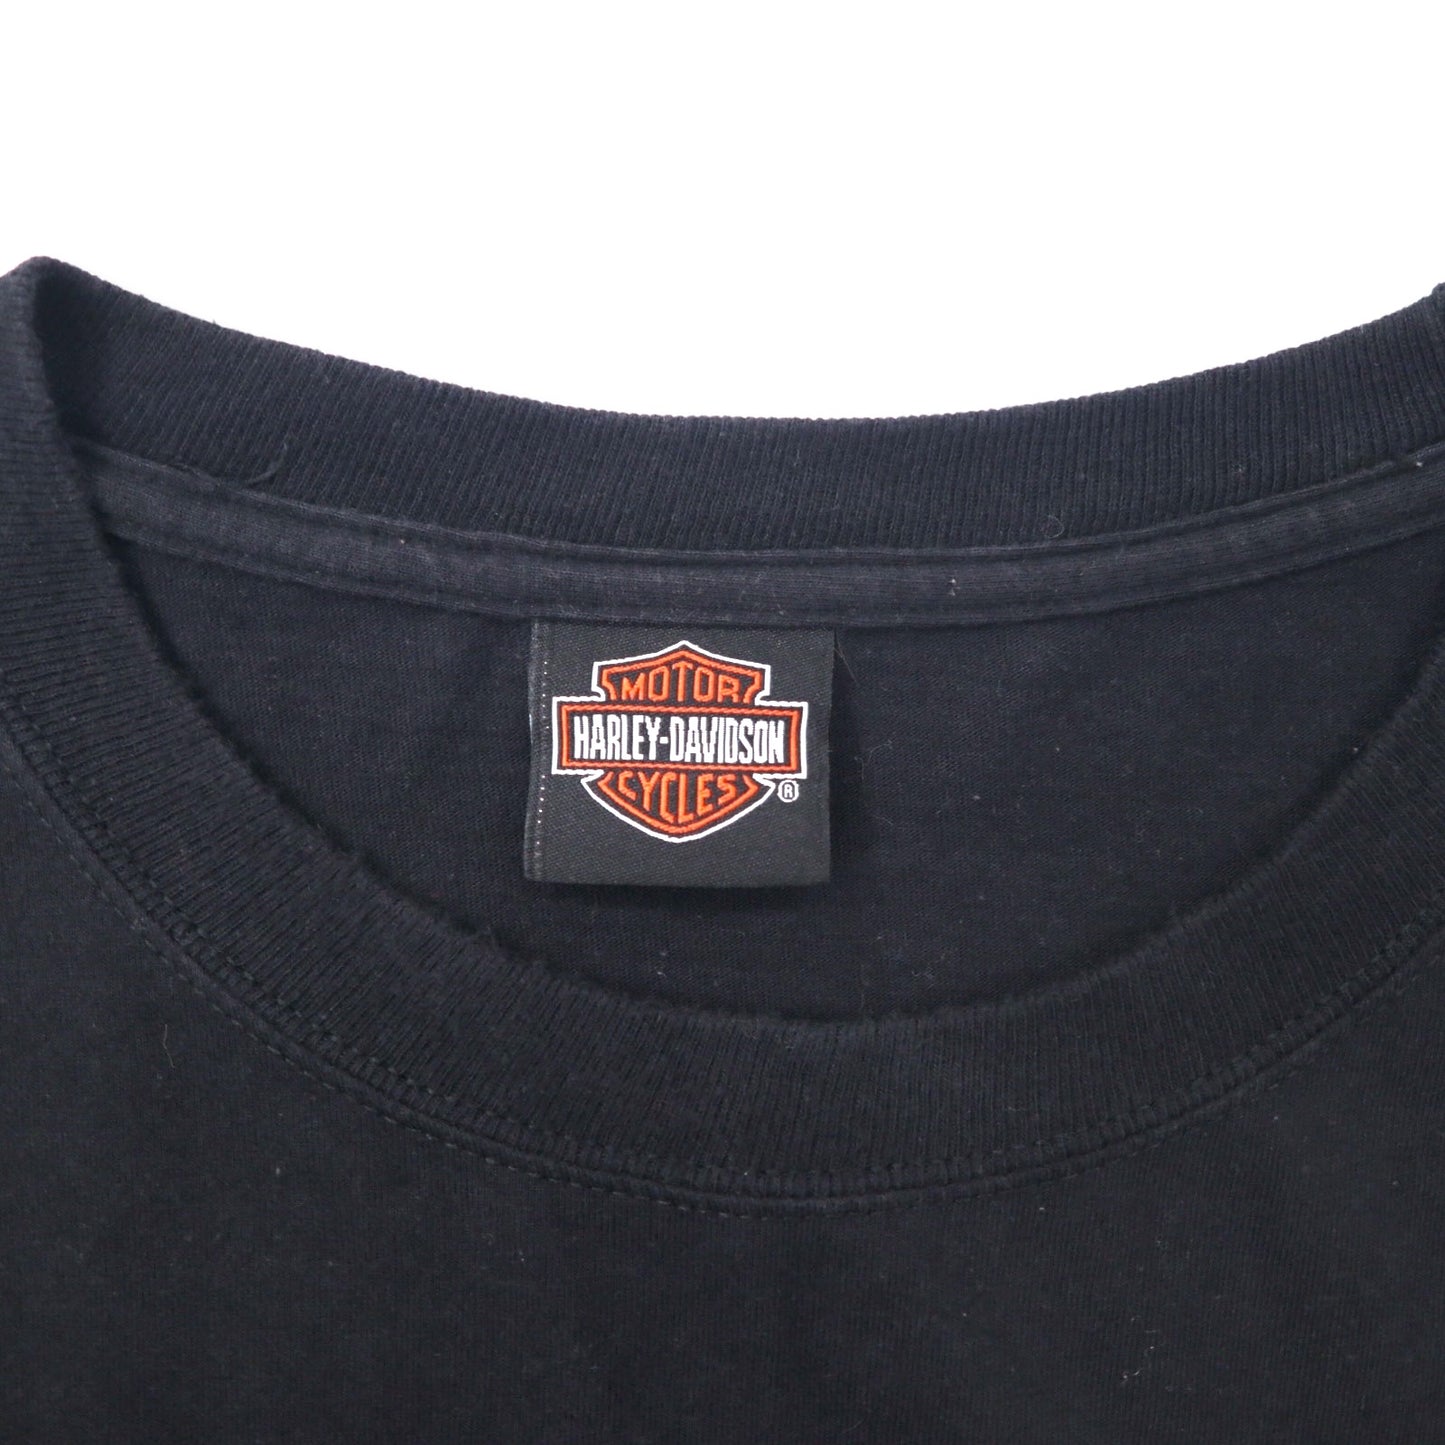 HARLEY DAVIDSON ロゴプリント Tシャツ ポケT XL ブラック コットン HANES BEEFY-T 110th ANNIVERSARY ビッグサイズ